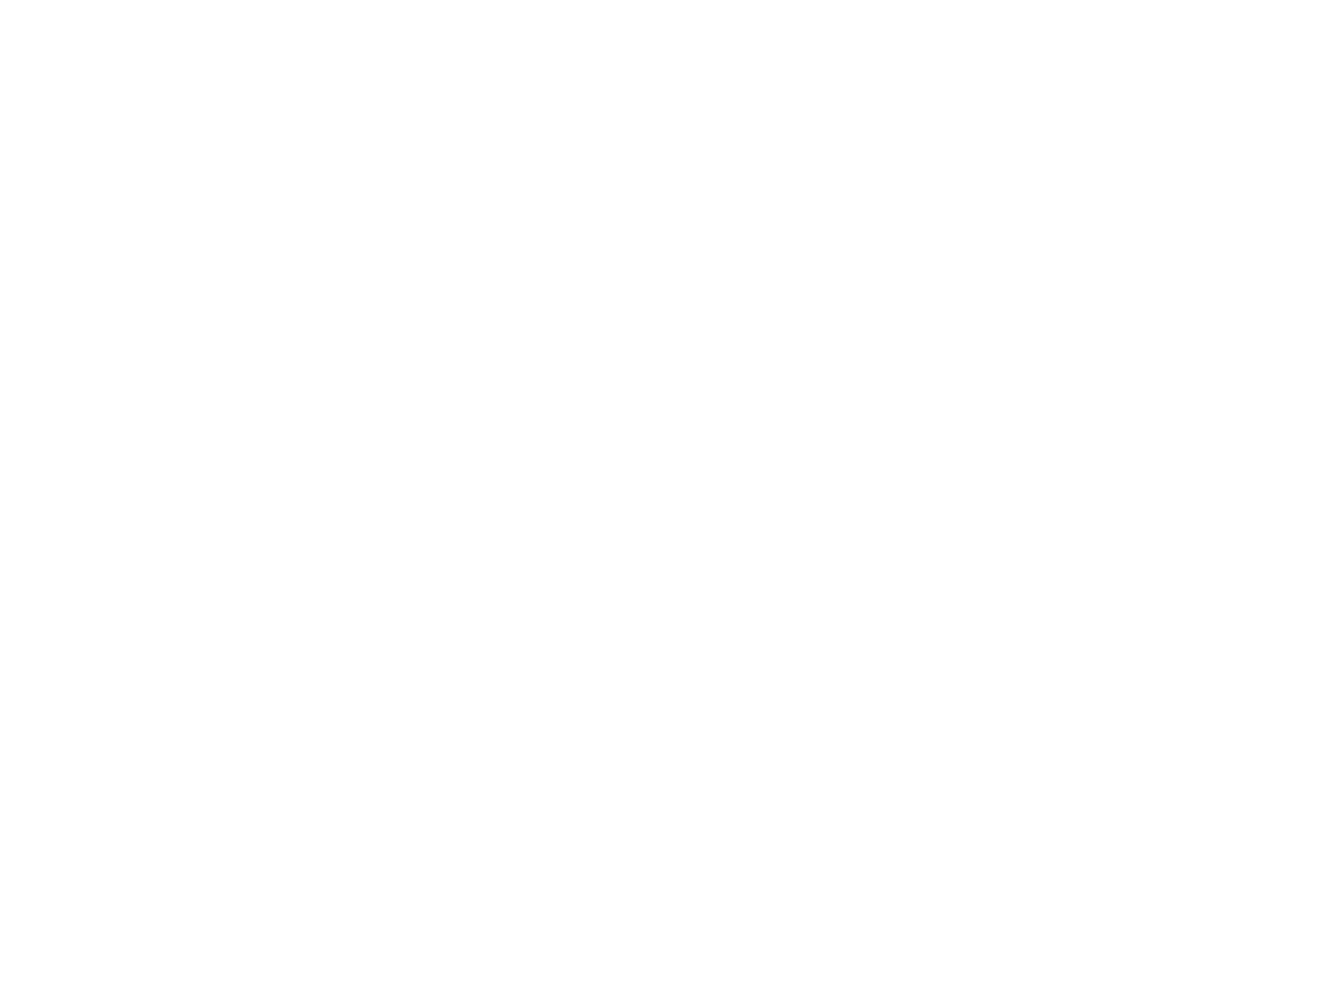 CALCANEUS - image 2